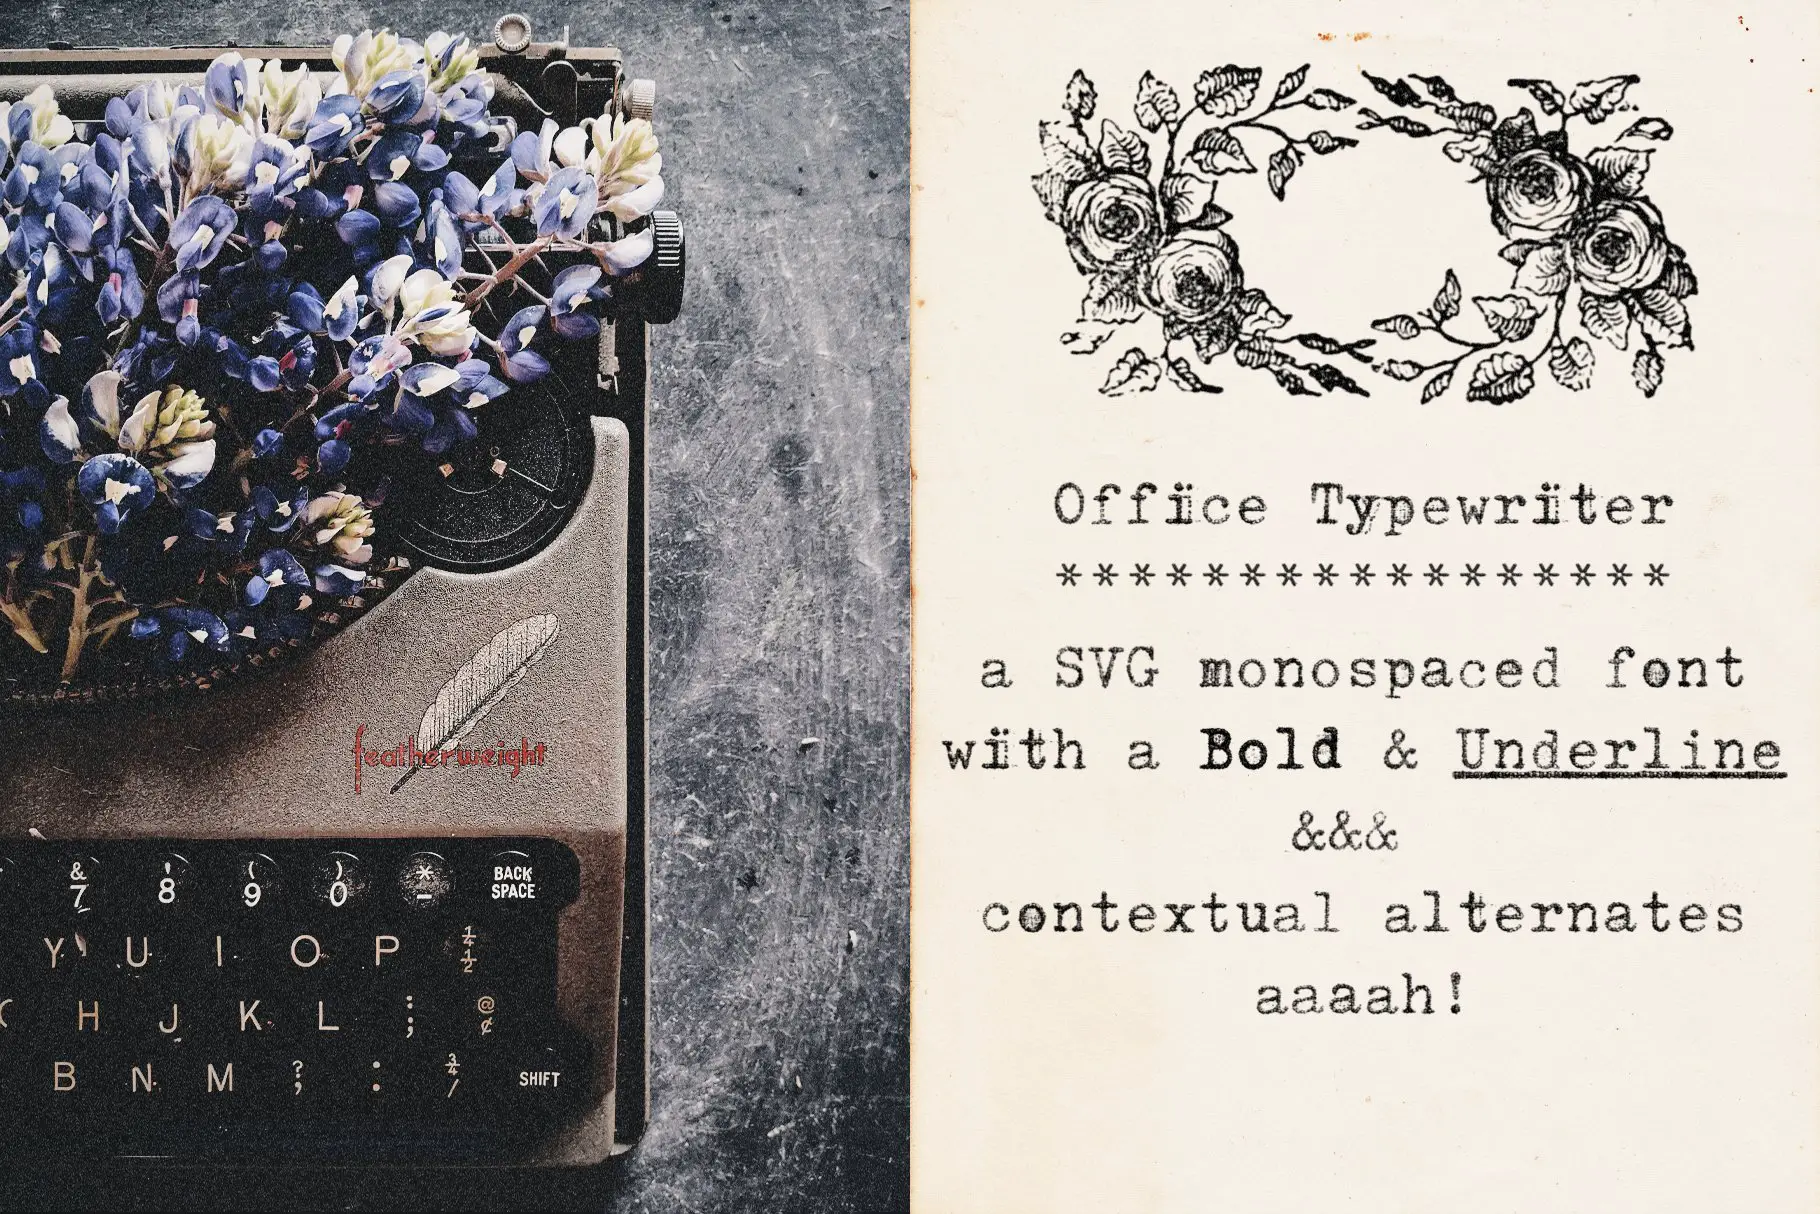 Office Typewriter - 